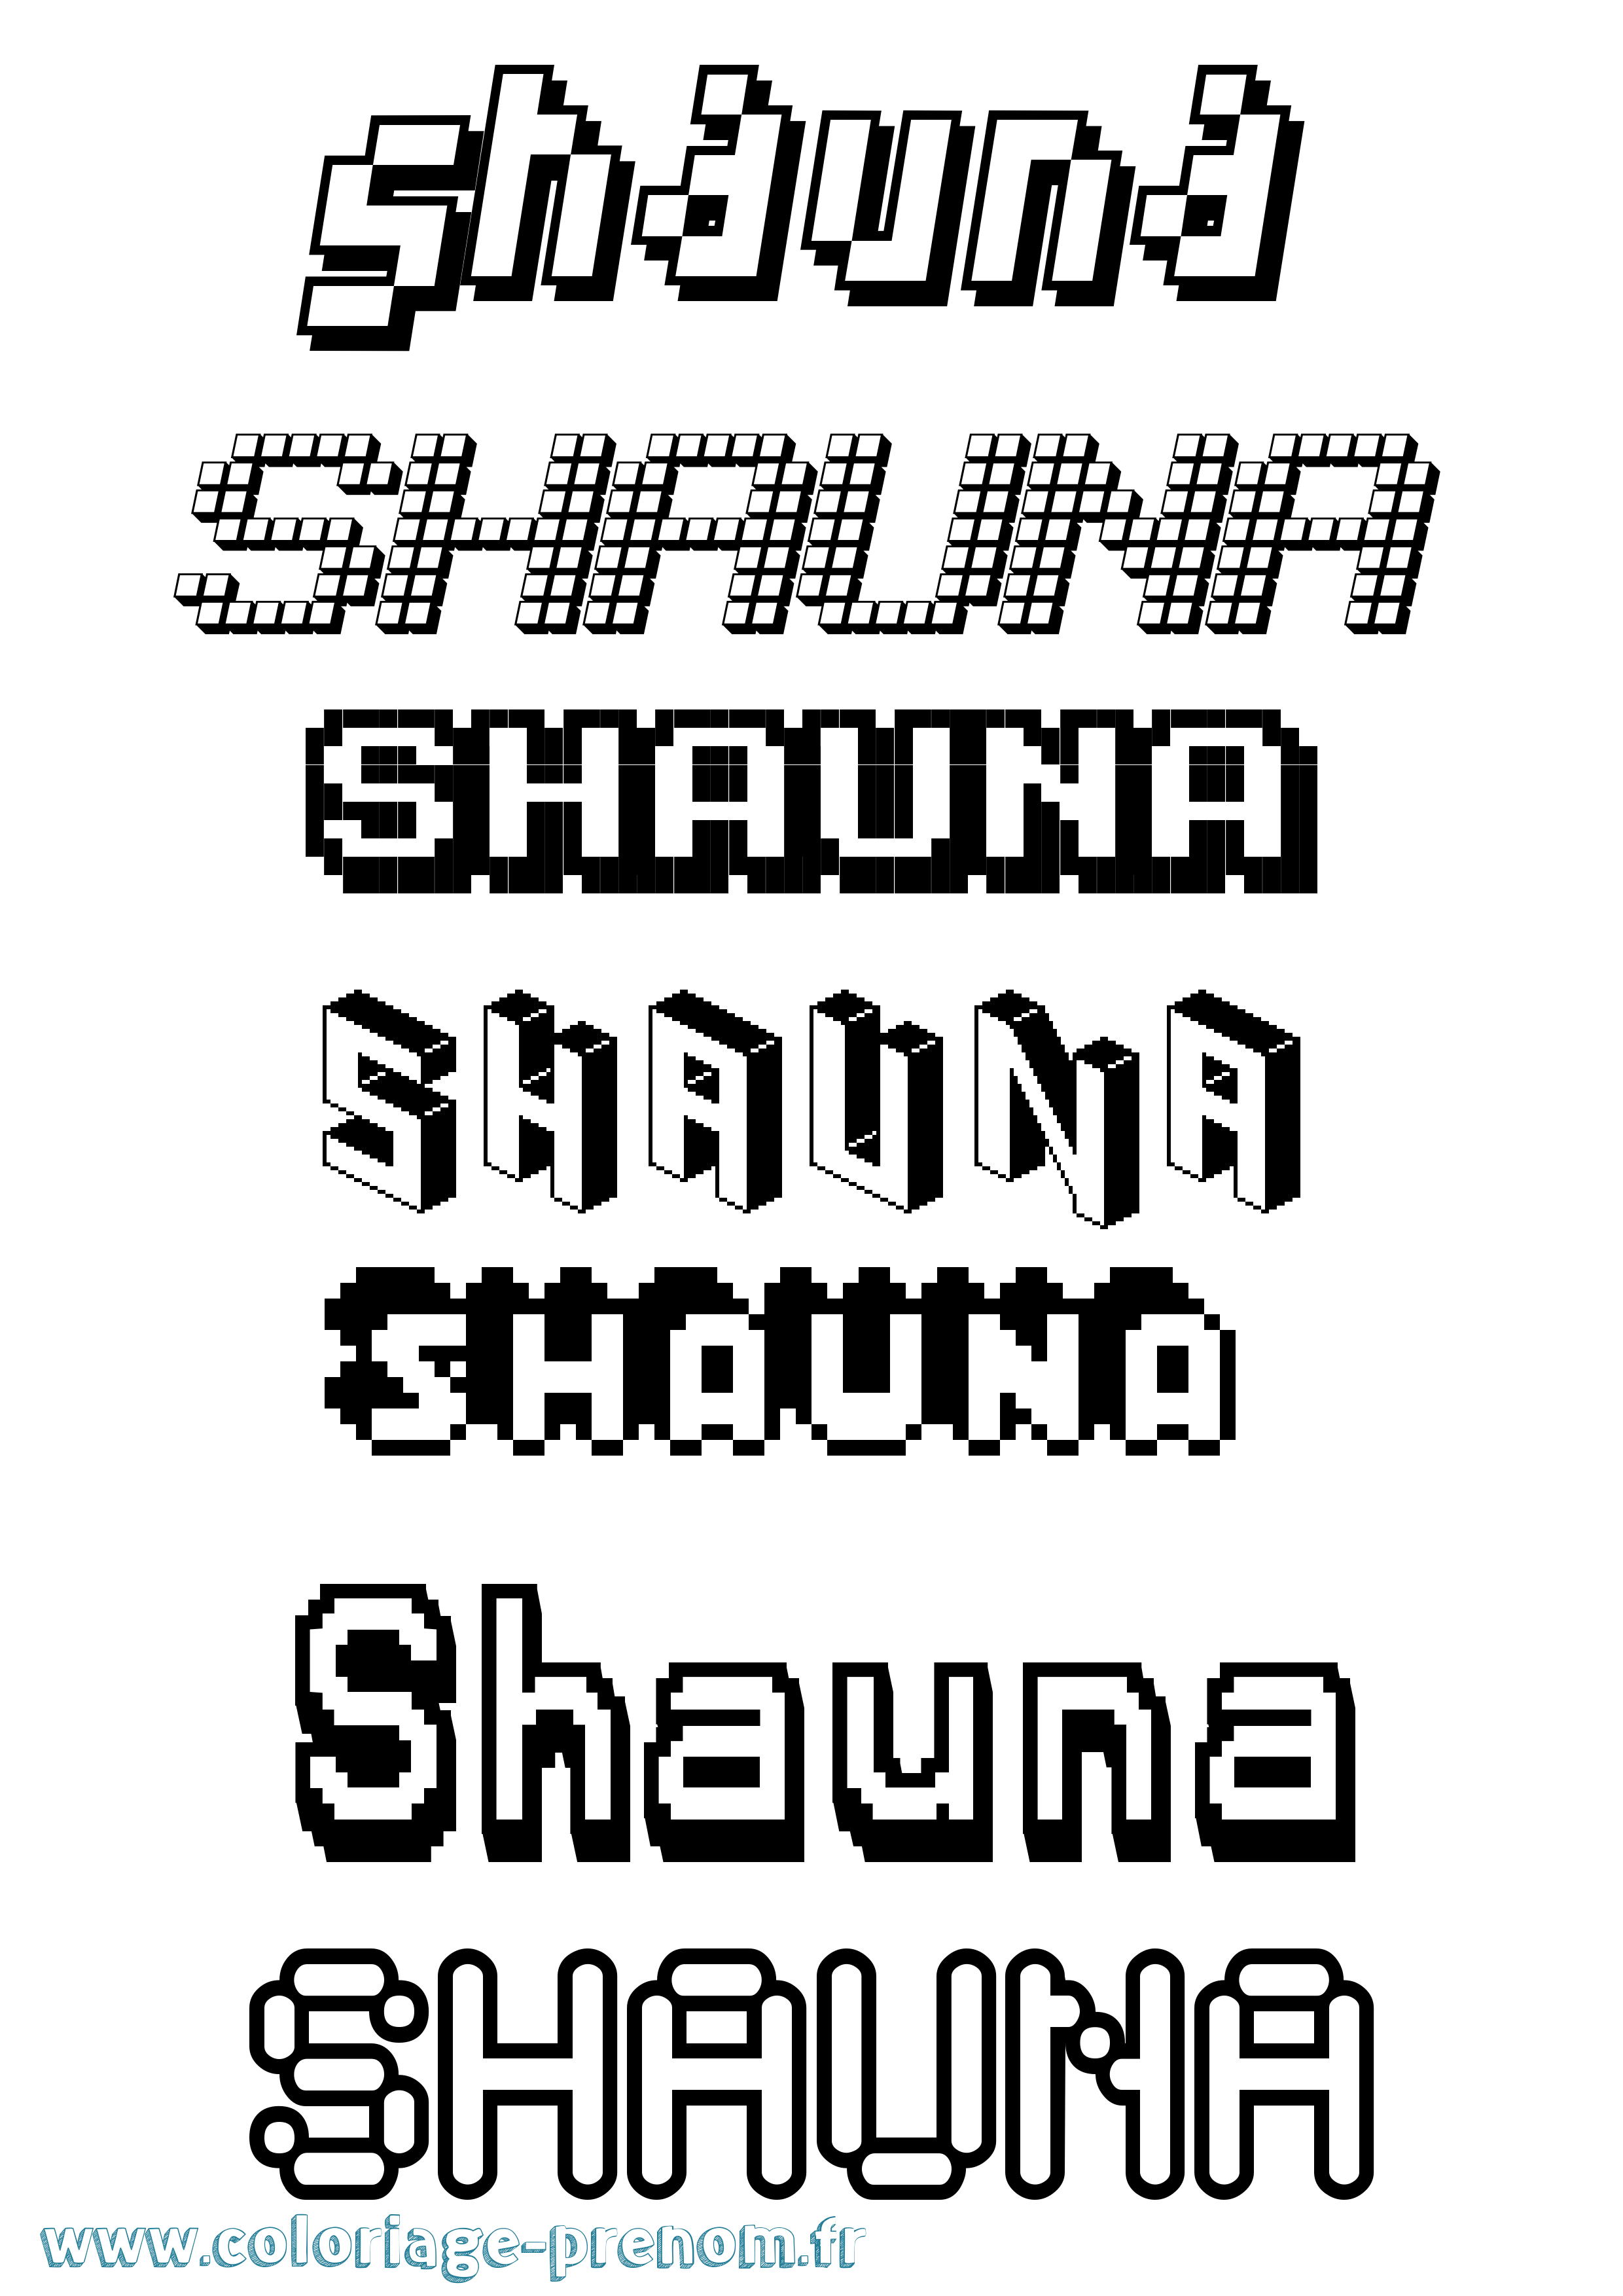 Coloriage prénom Shauna Pixel